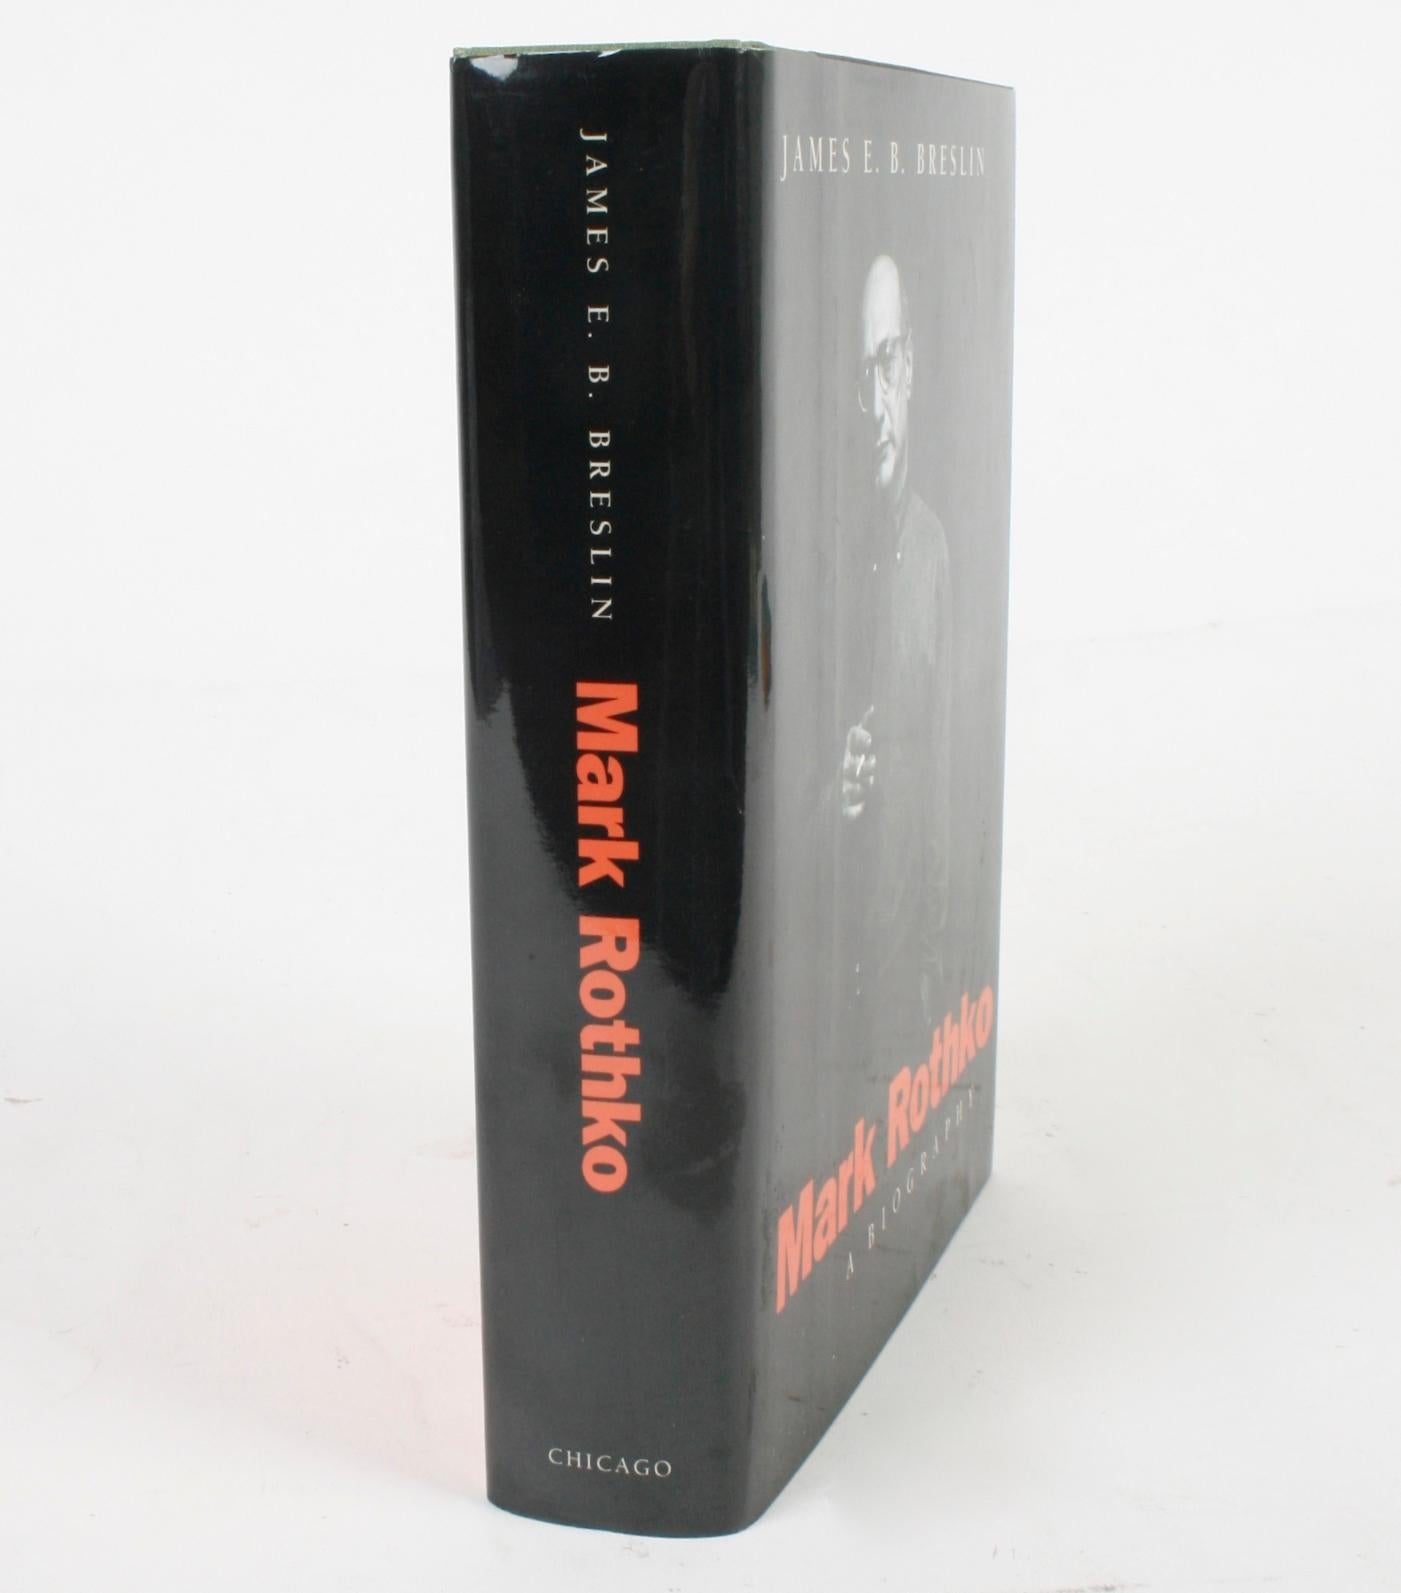 Mark Rothko: A Biography by James E. B. Breslin 13